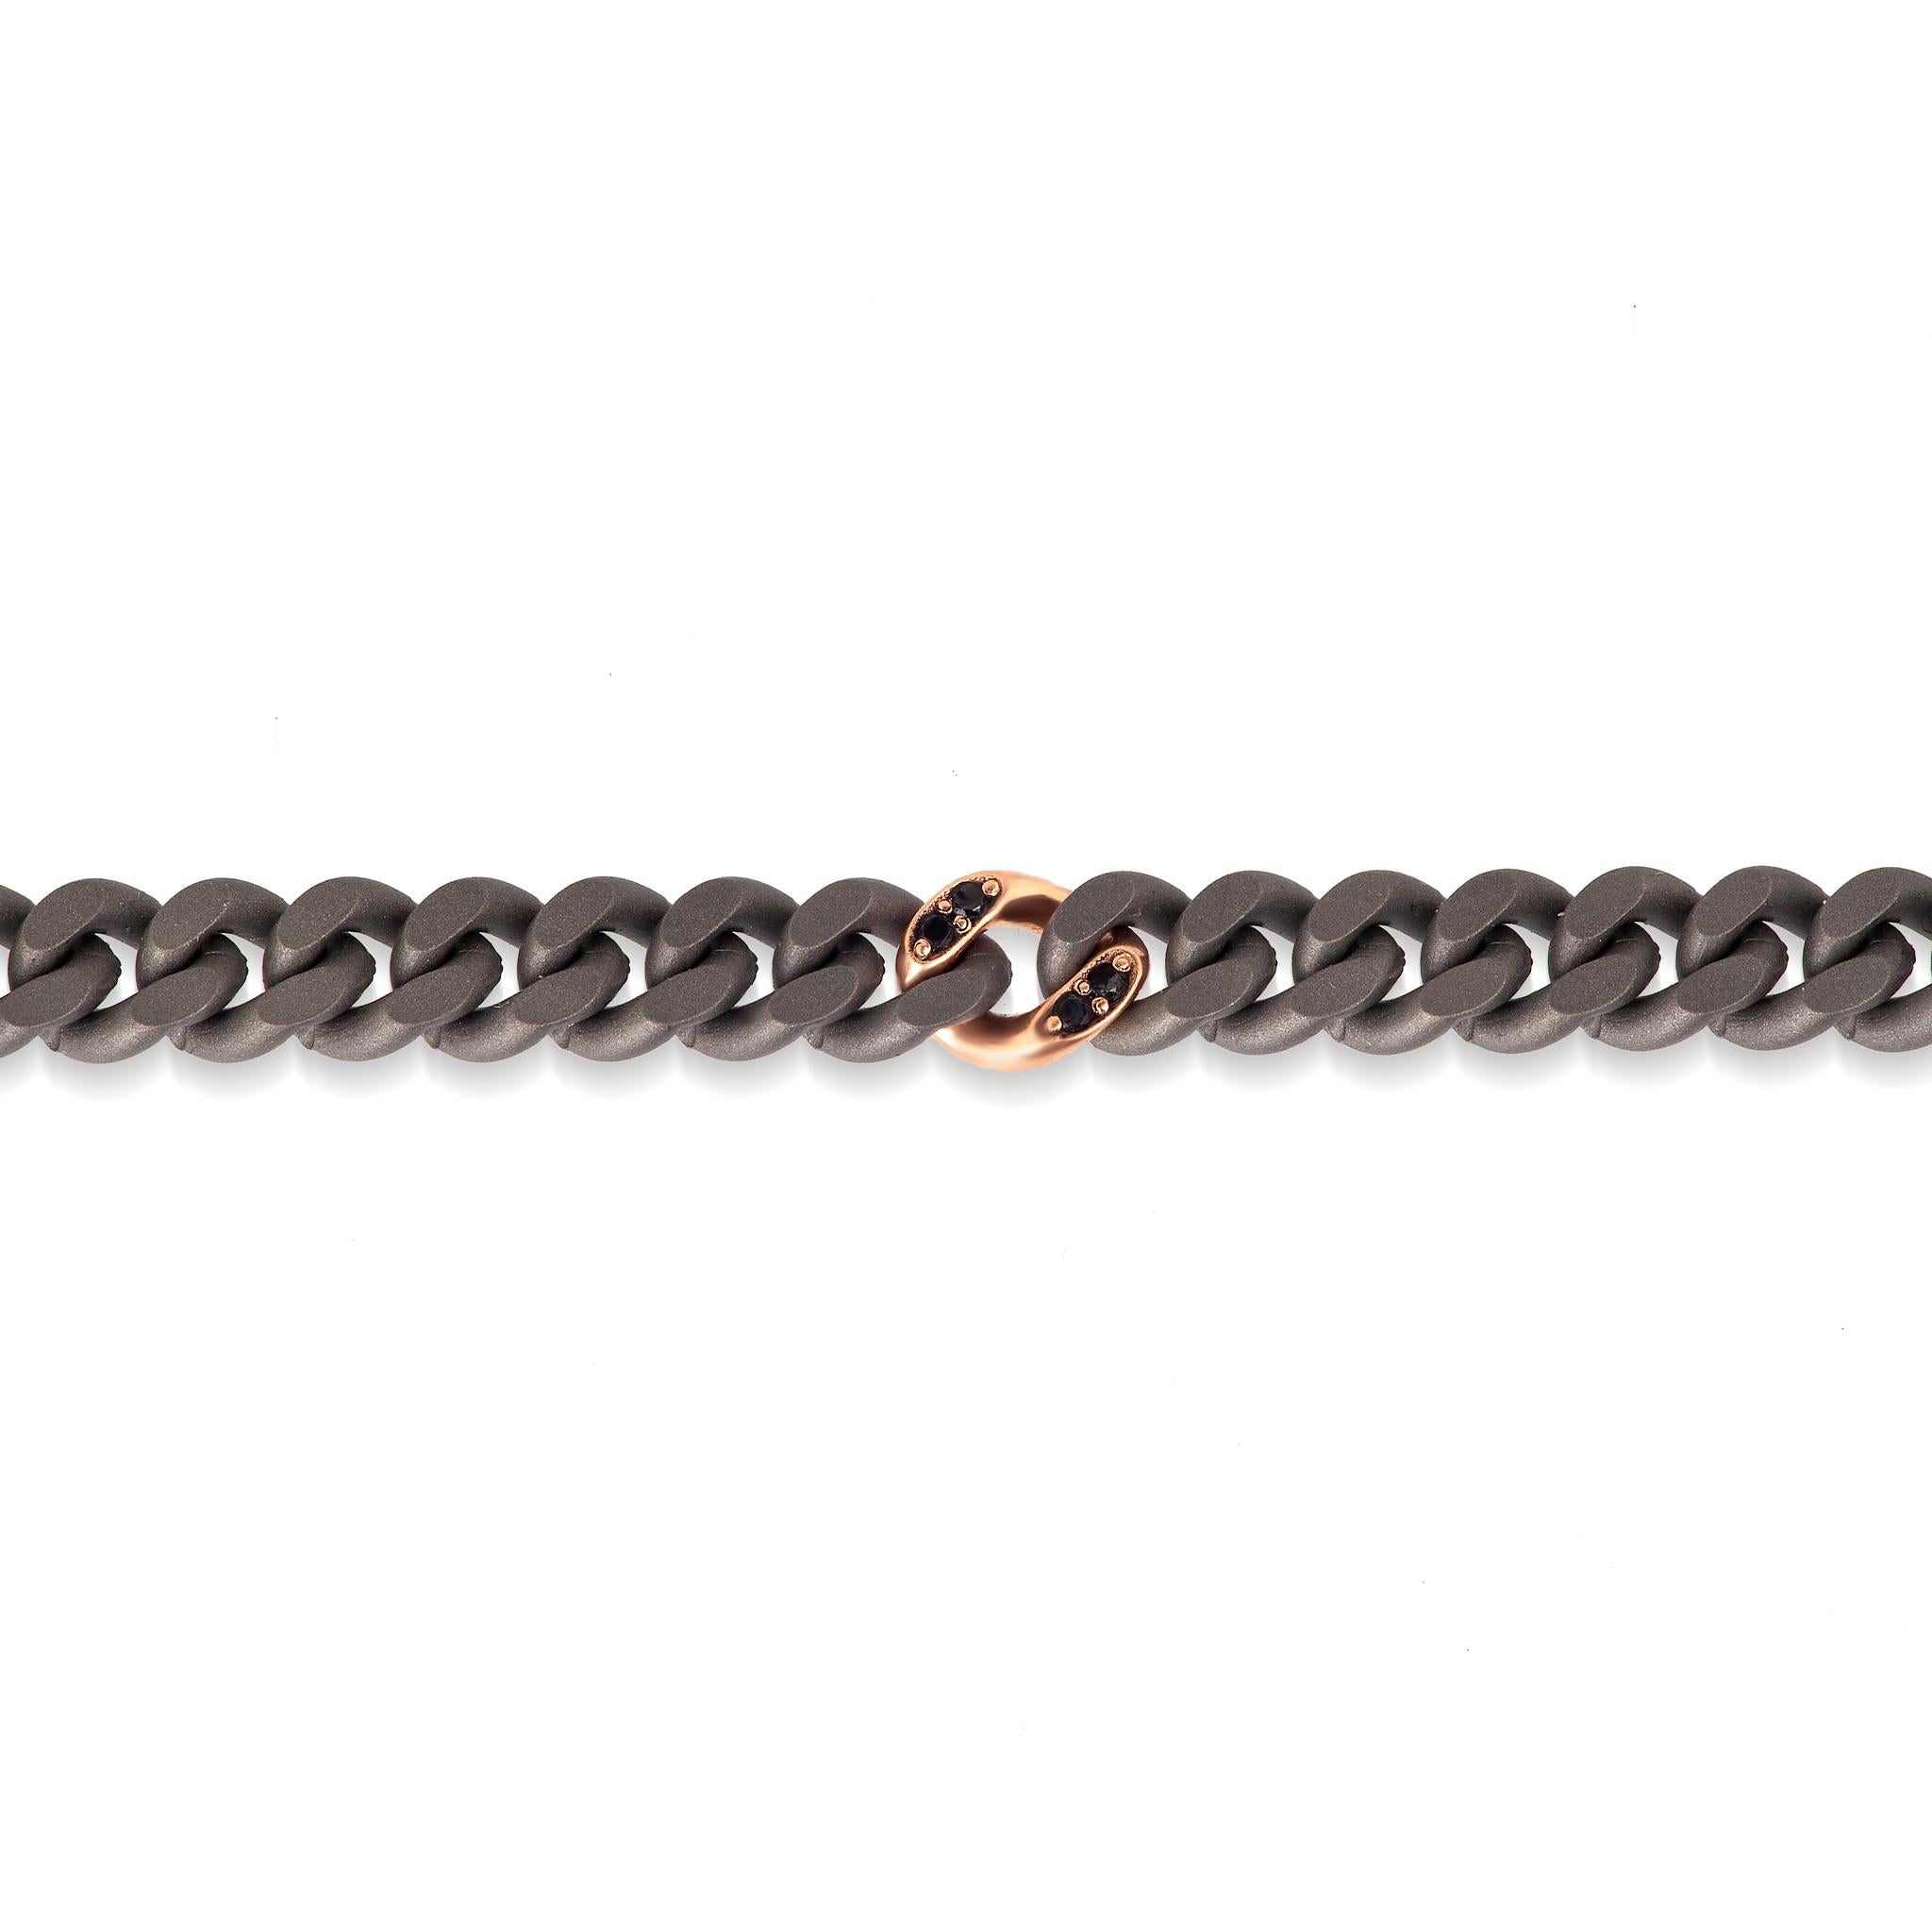 Bracelet ligne groumette pour homme en titane, diamants noirs et or rouge 18 kt. Magnifique bracelet avec chaîne à groumets en titane et or rouge 18 kt. La chaîne à groumette en titane, élément principal du bracelet, est entrecoupée d'un insert à